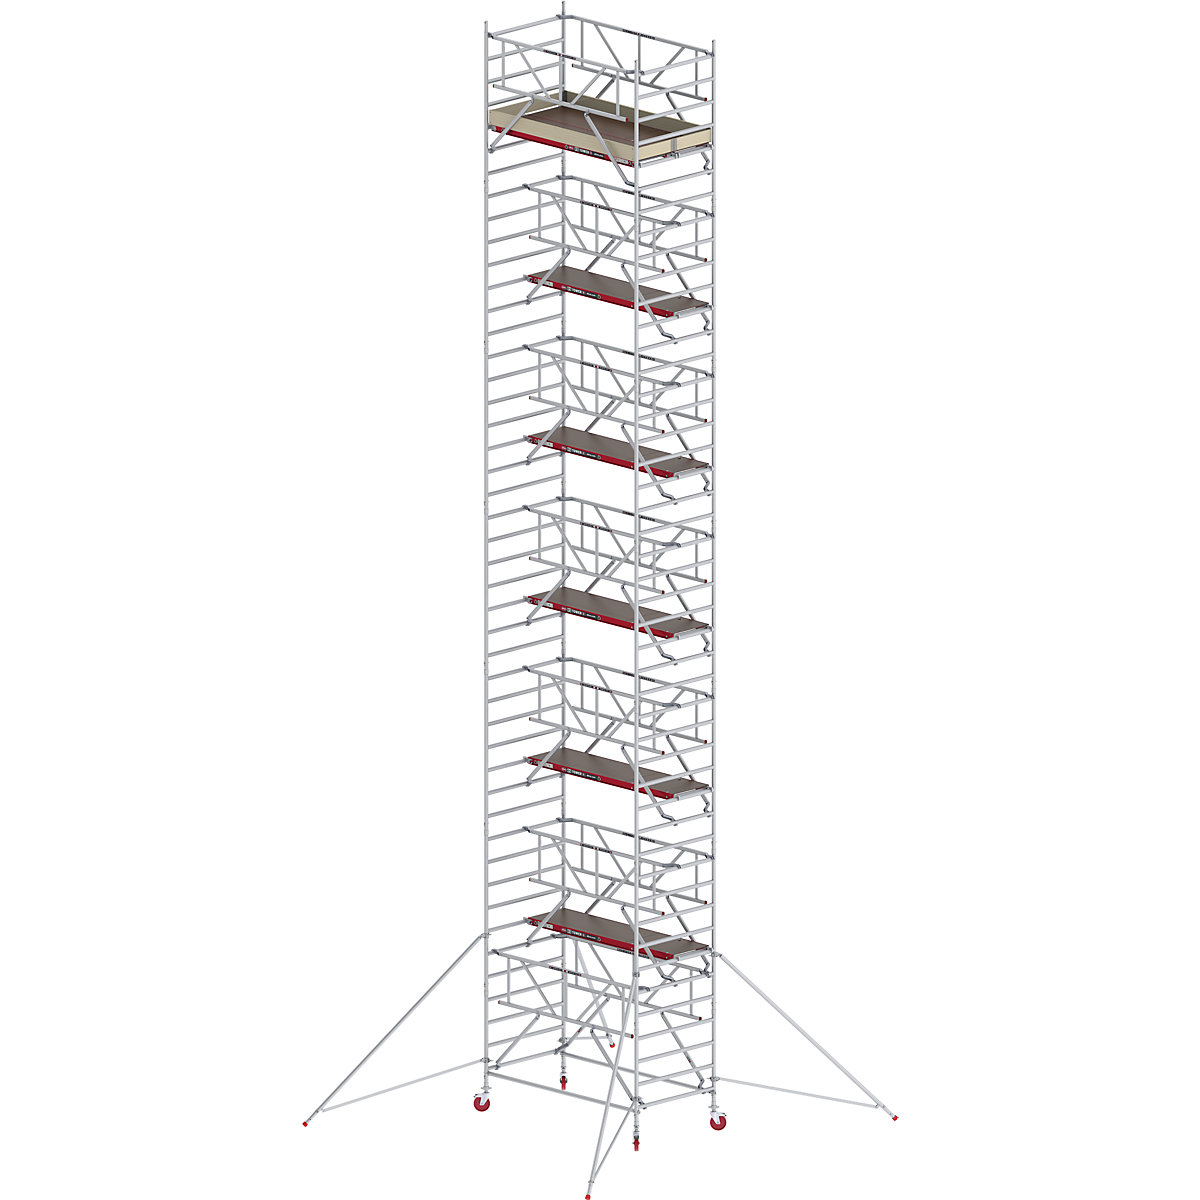 Rusztowanie ruchome RS TOWER 42, szerokie, z poręczą Safe-Quick® – Altrex, platforma drewniana, dł. 2,45 m, wys. robocza 14,2 m-9